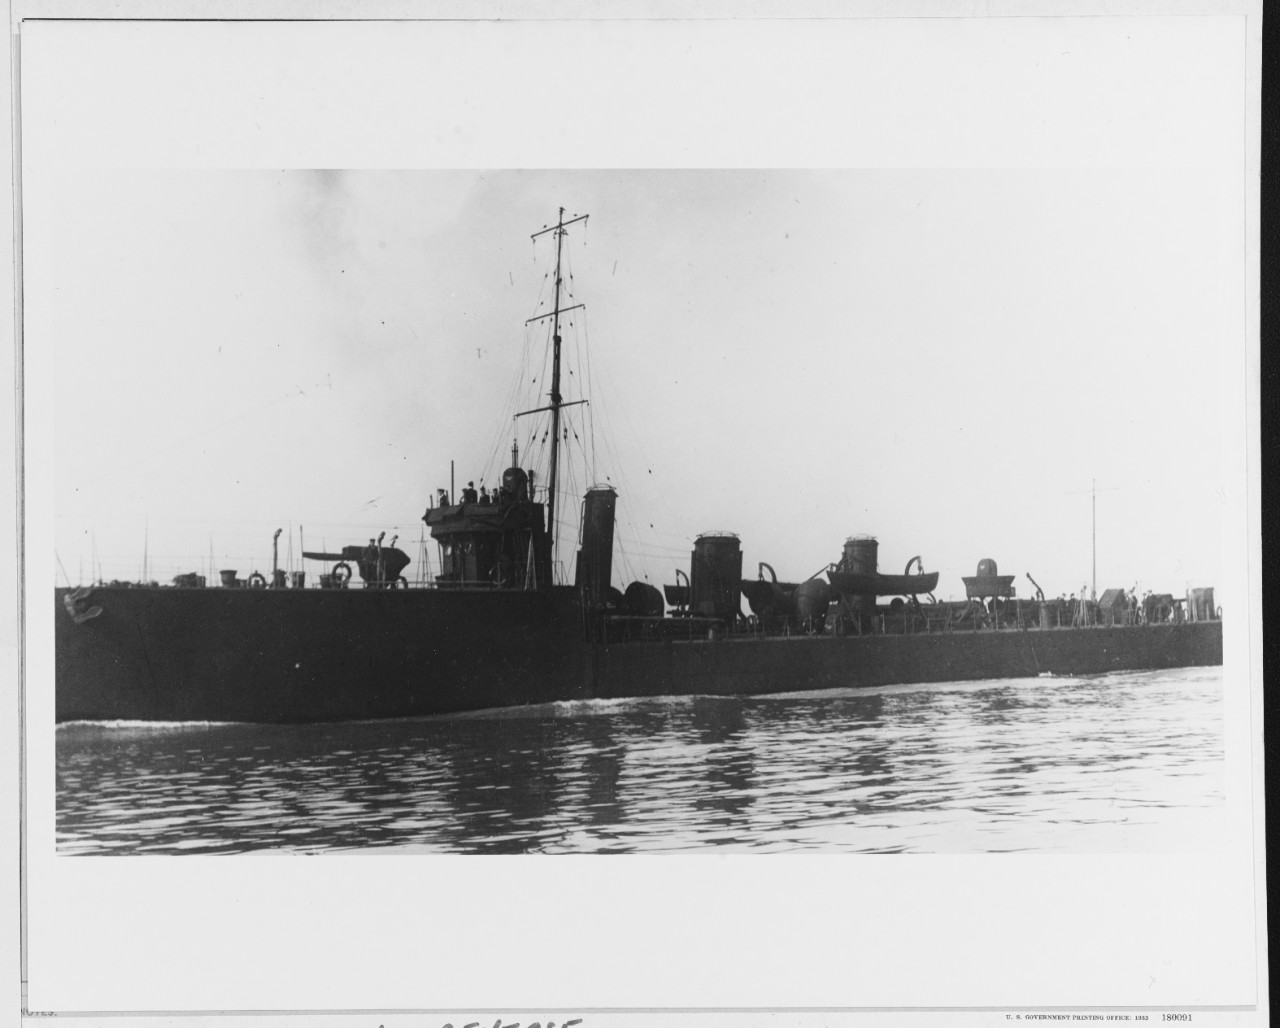 HMS LYRA (British Destroyer, 1910)